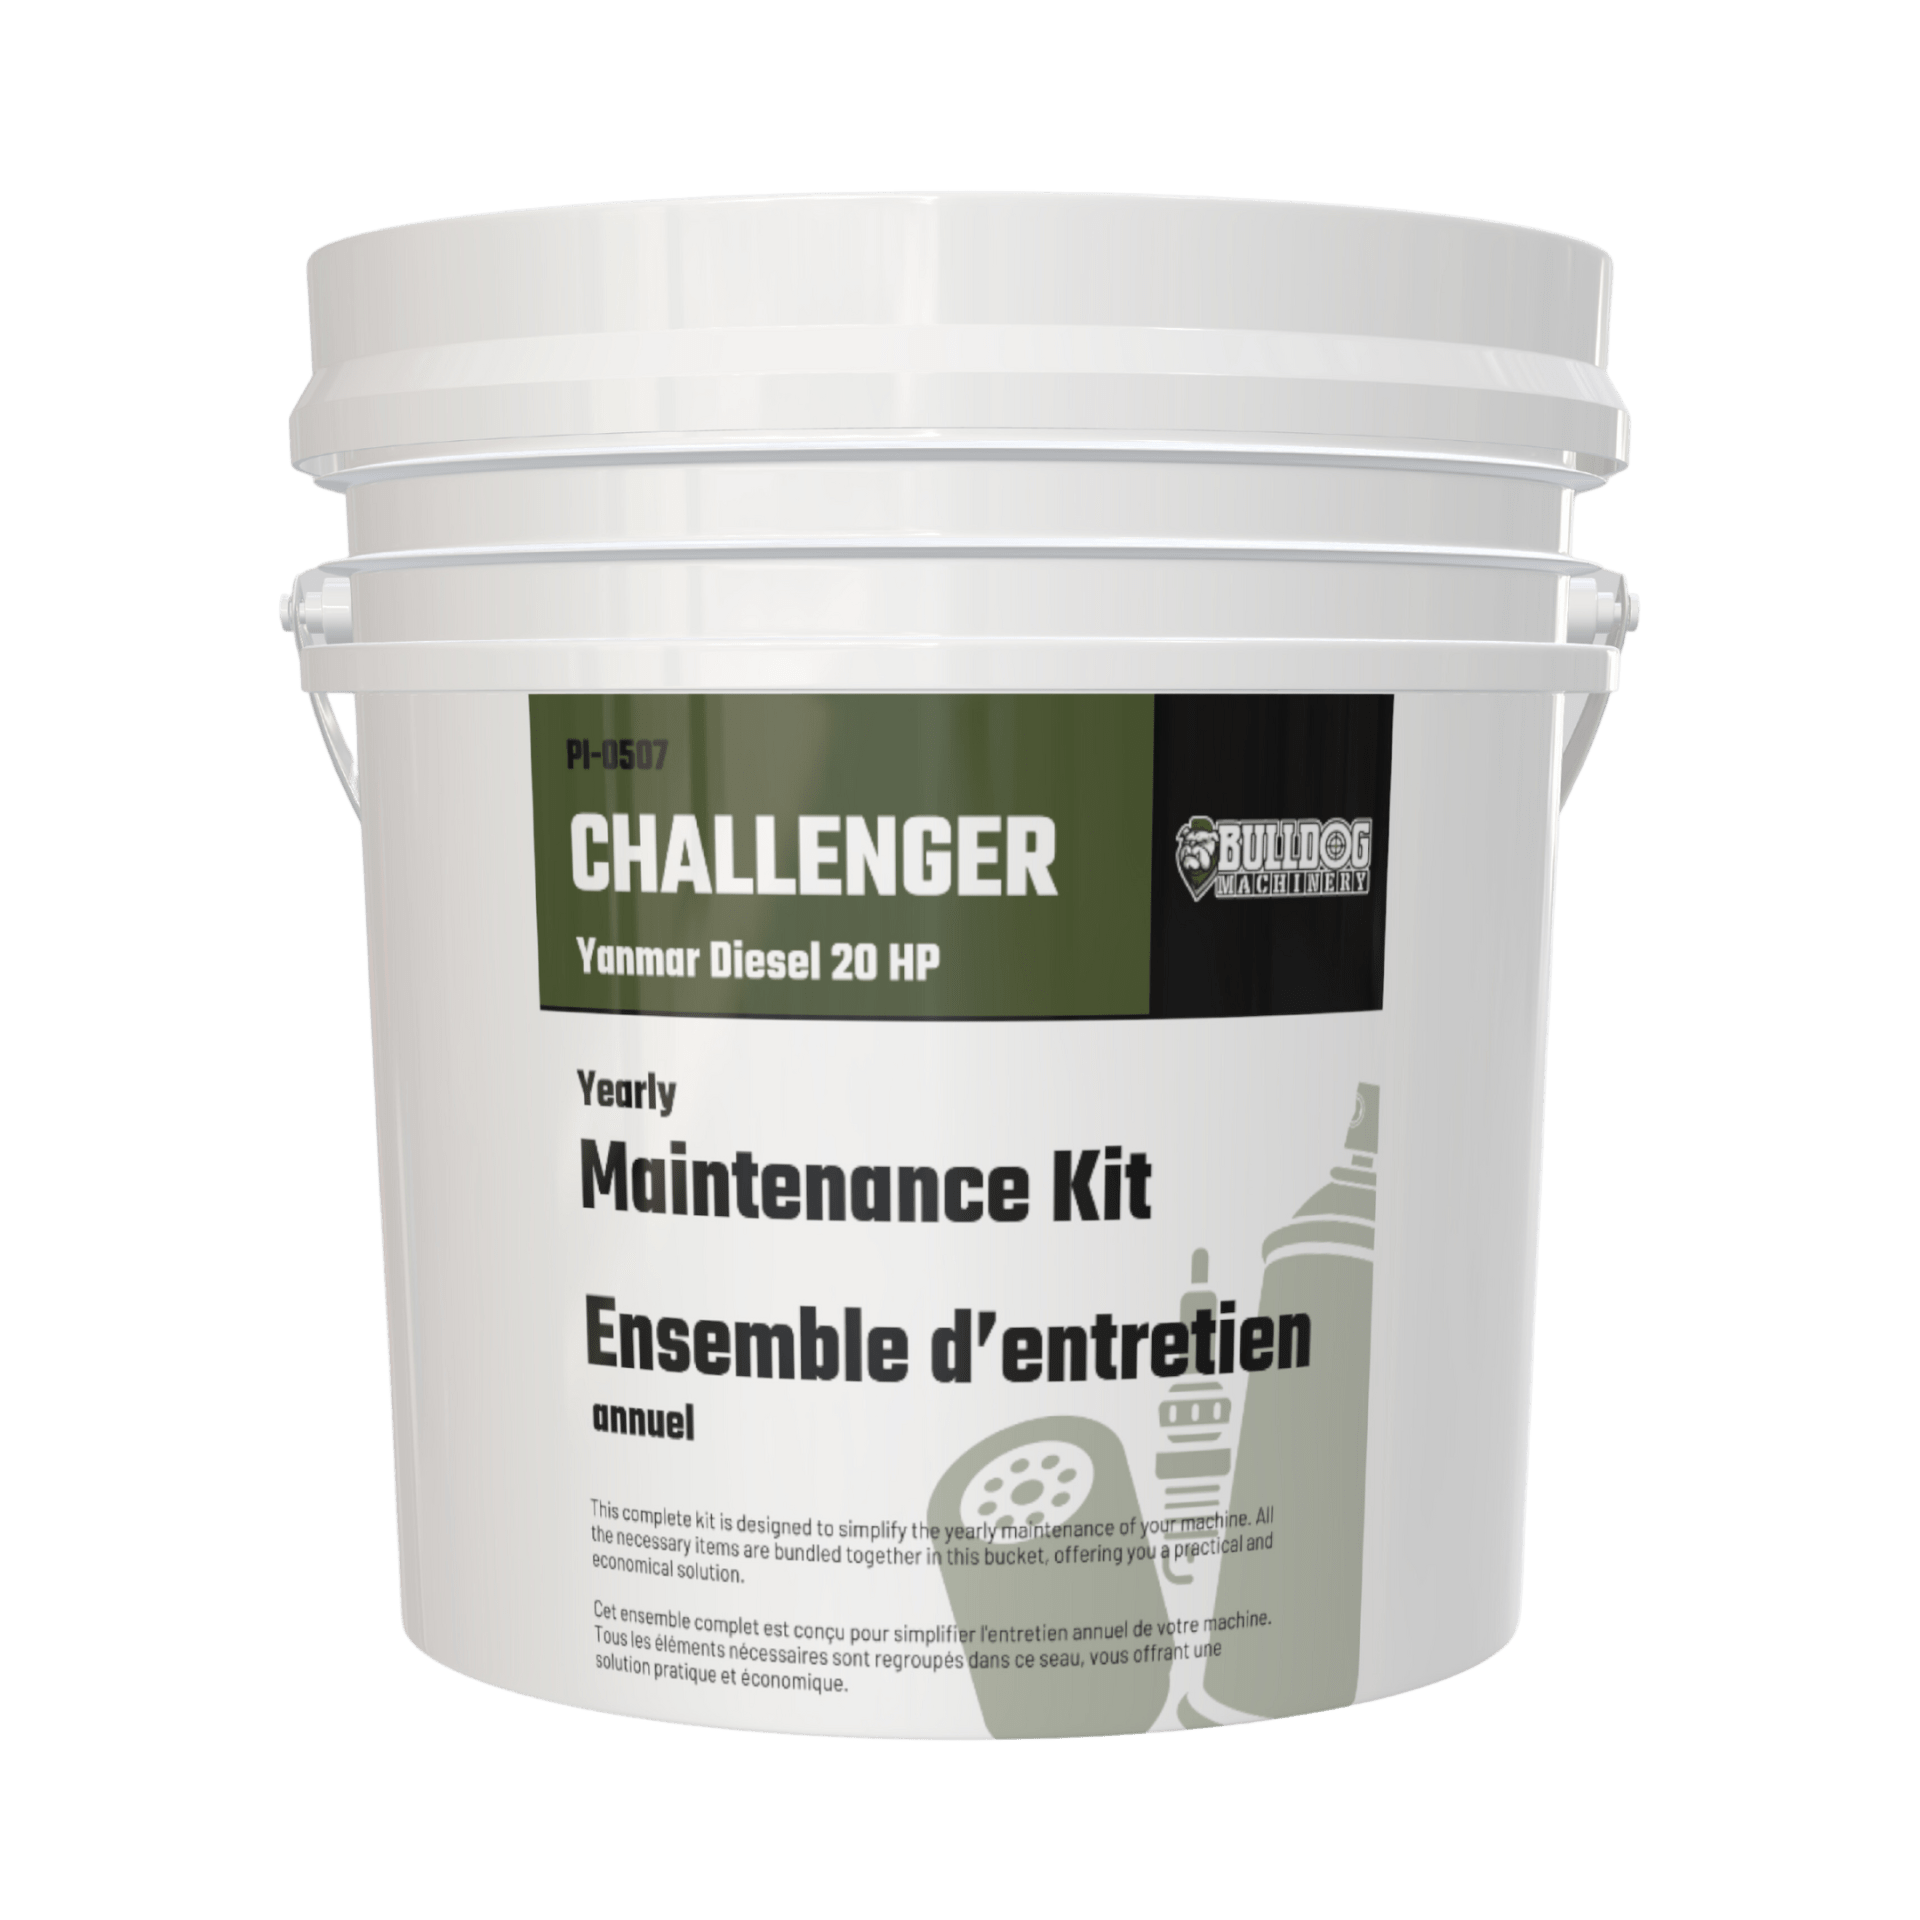 Maintenance Kit for Bulldog Challenger